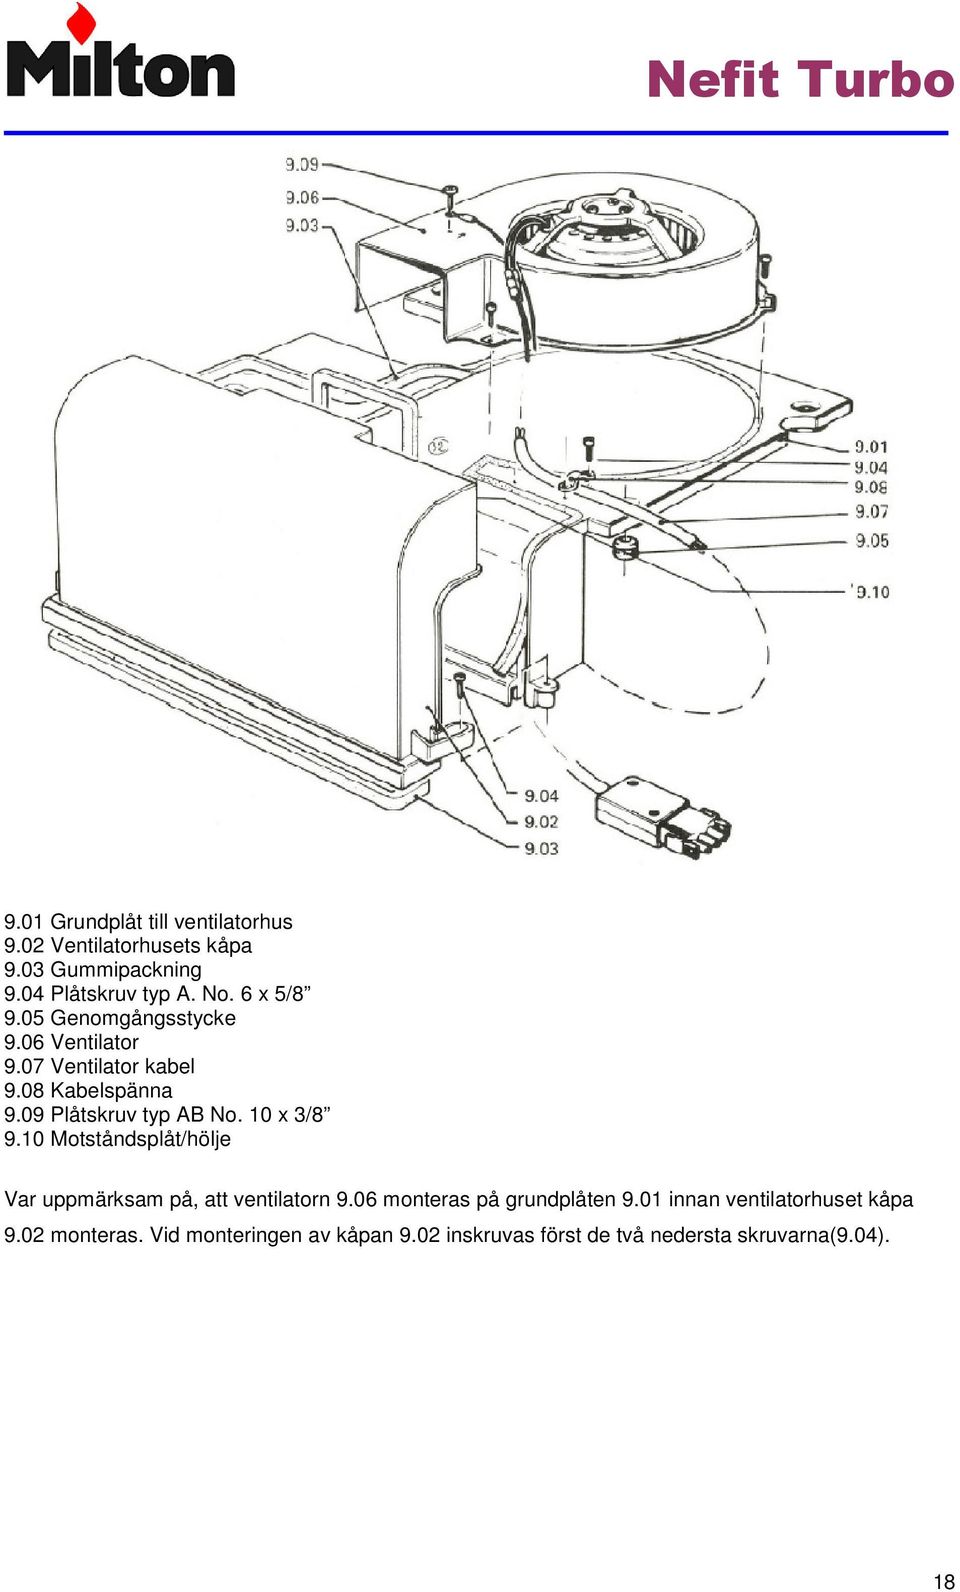 10 x 3/8 9.10 Motståndsplåt/hölje Var uppmärksam på, att ventilatorn 9.06 monteras på grundplåten 9.